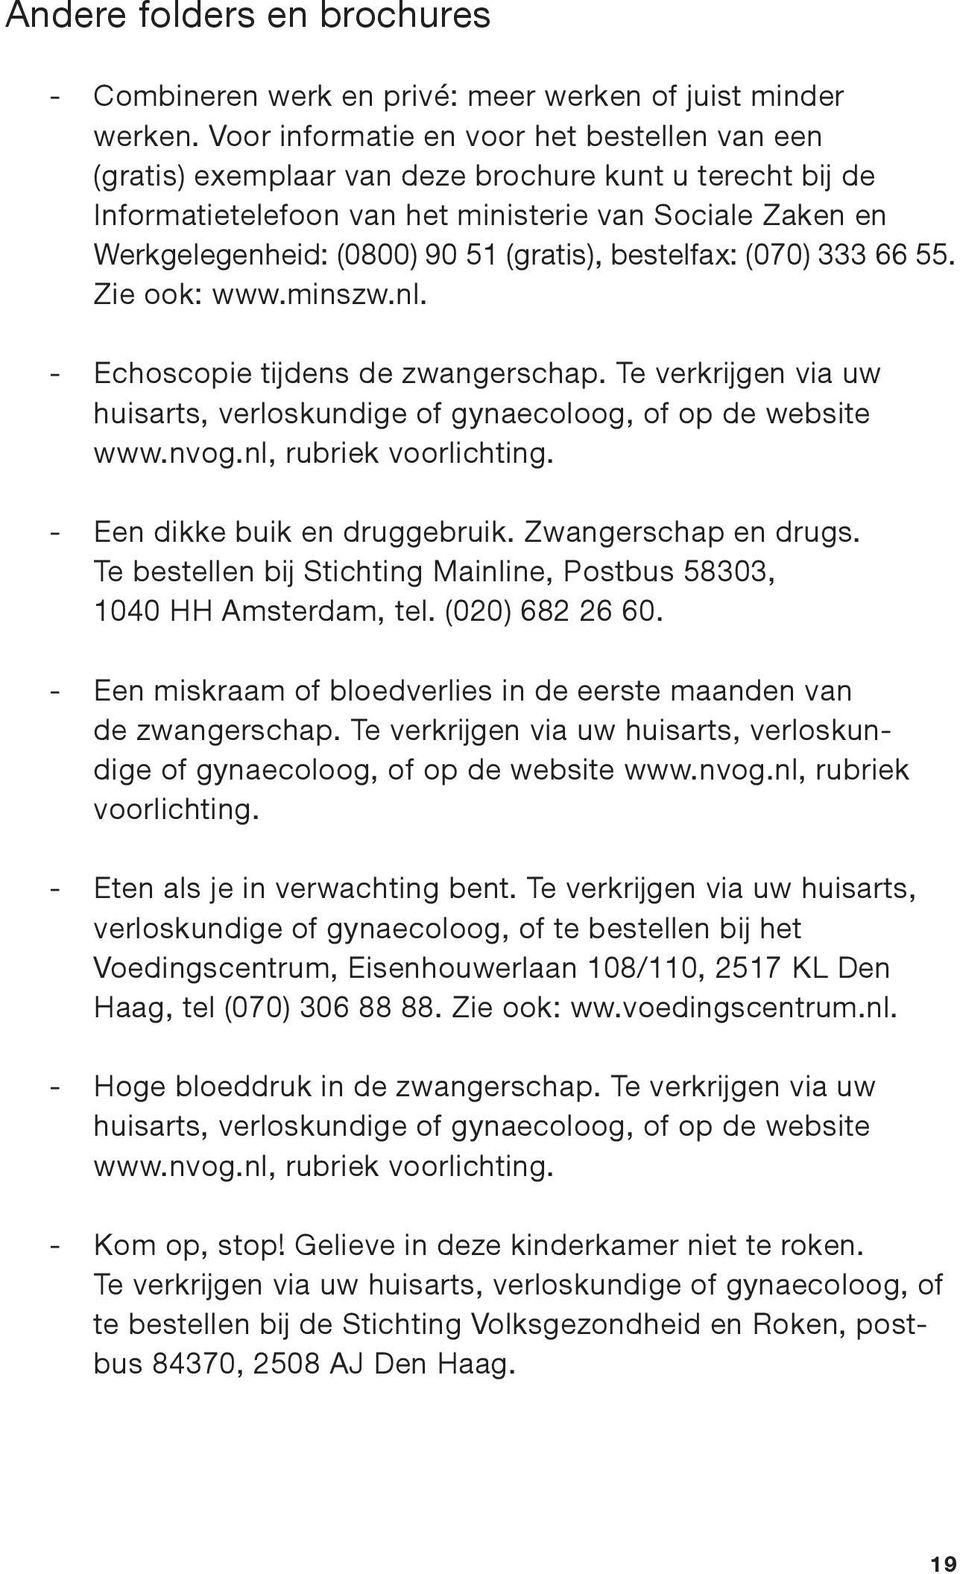 (gratis), bestelfax: (070) 333 66 55. Zie ook: www.minszw.nl. - Echoscopie tijdens de zwangerschap. Te verkrijgen via uw huisarts, verloskundige of gynaecoloog, of op de website www.nvog.